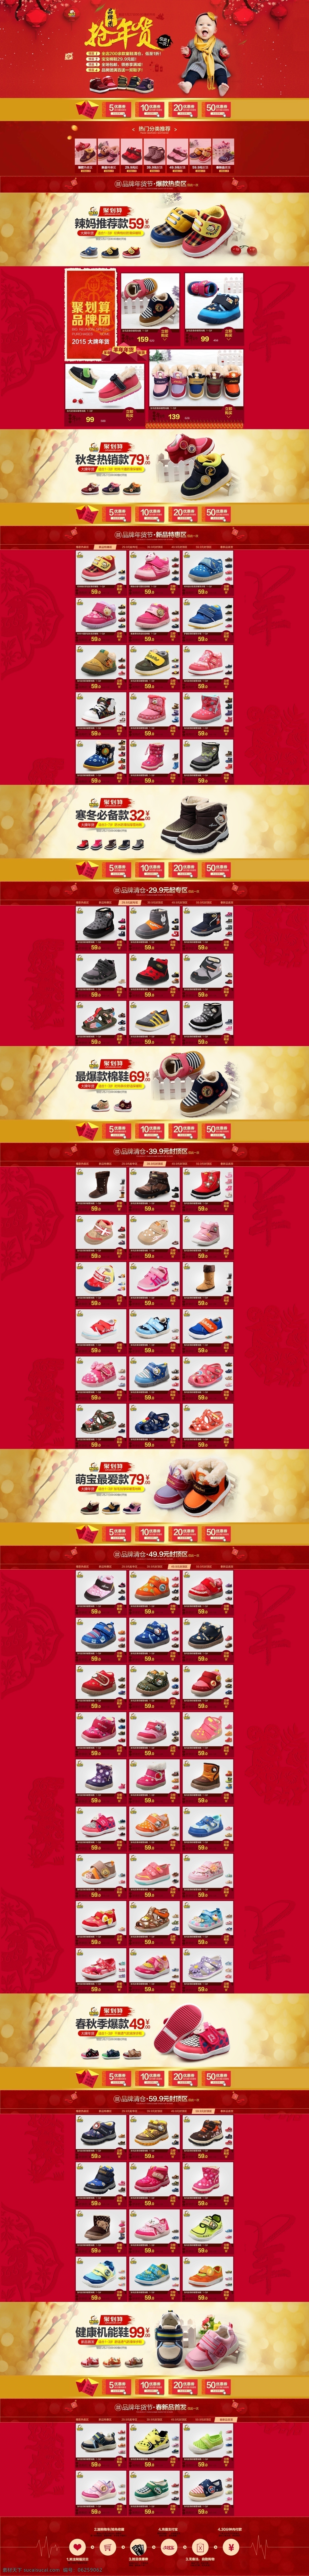 天猫 活动 抢 年货 首页 大 广告 图 宝宝鞋 淘宝素材 淘宝设计 淘宝模板下载 红色